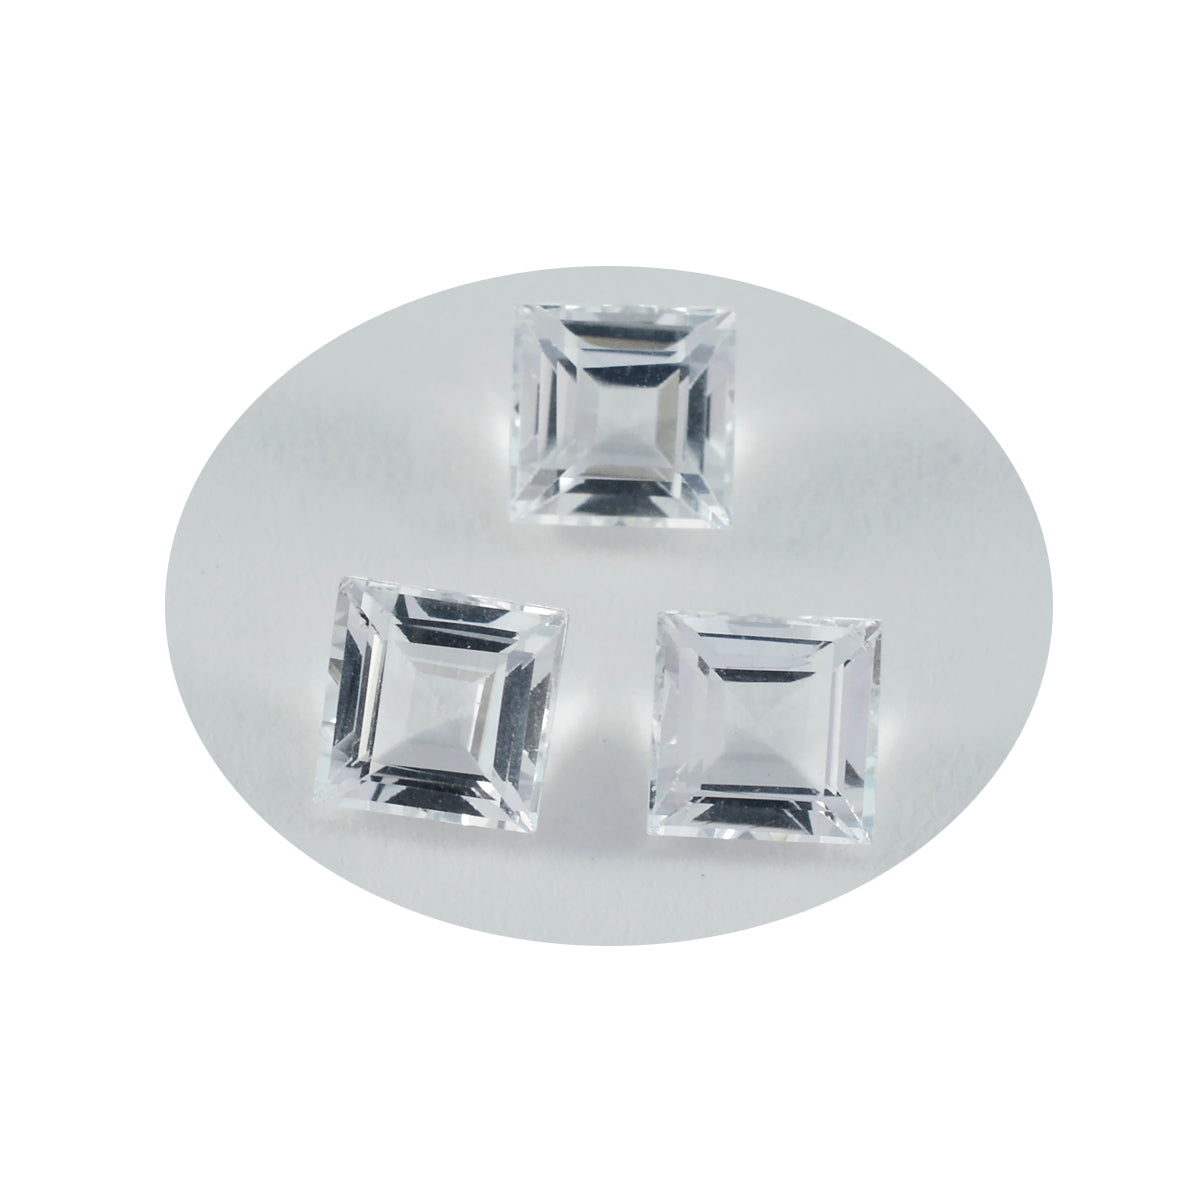 Riyogems 1 pieza de cuarzo de cristal blanco facetado 11x11 mm forma cuadrada piedra preciosa de calidad asombrosa